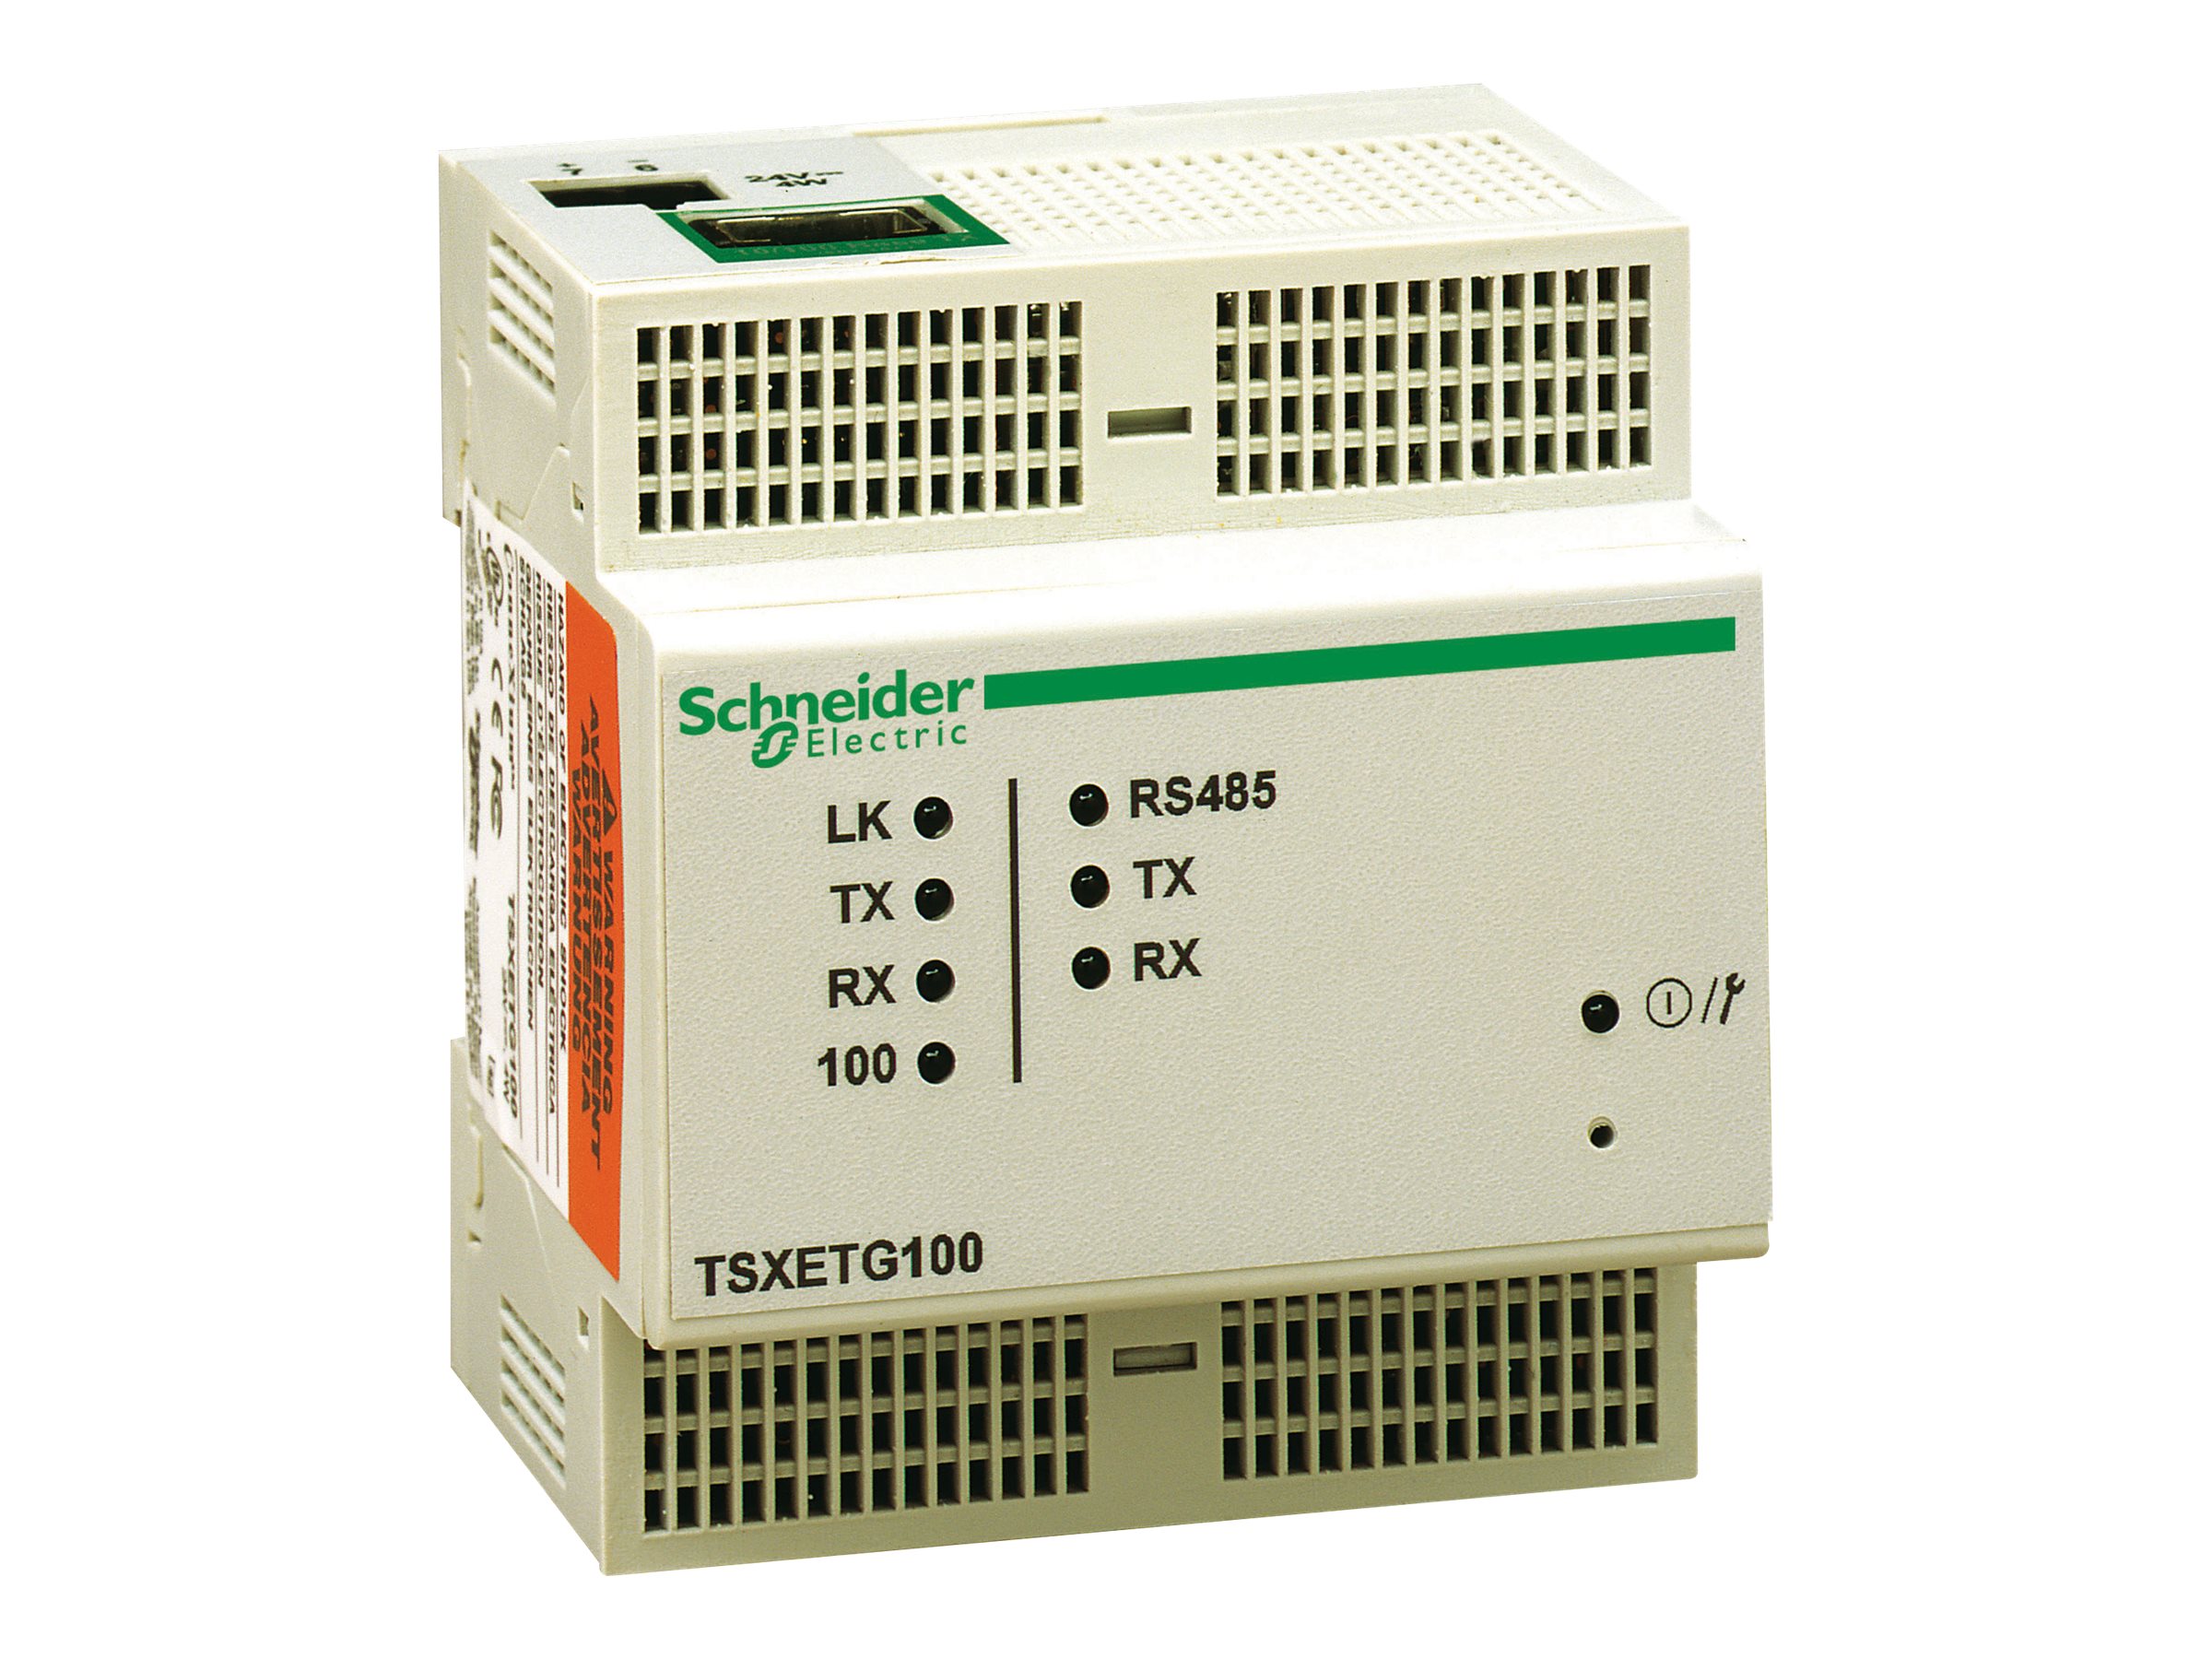 Schneider TSXETG100 - Gateway - 100Mb LAN, Modbus